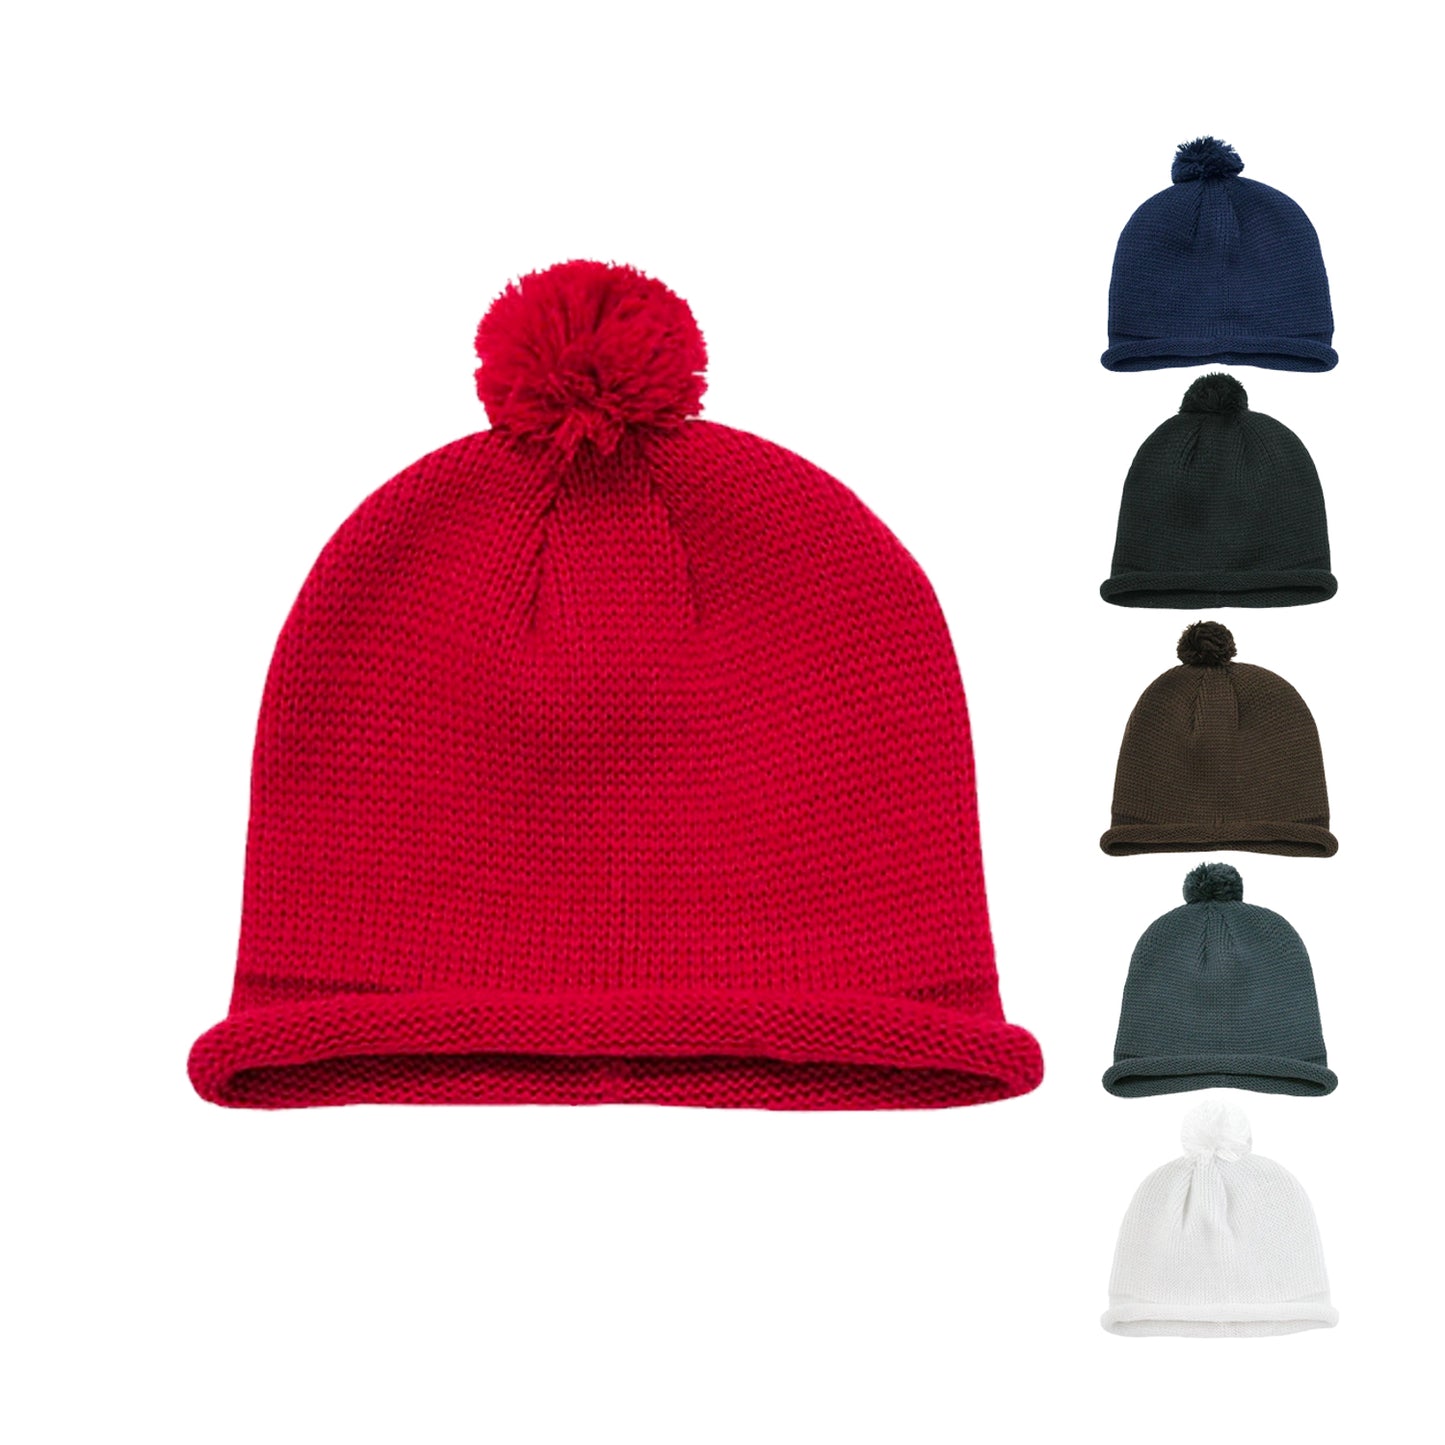 Decky 611A Roll Up Knit Beanie Hats with Pom Pom Winter Warm Beanies Caps Ski